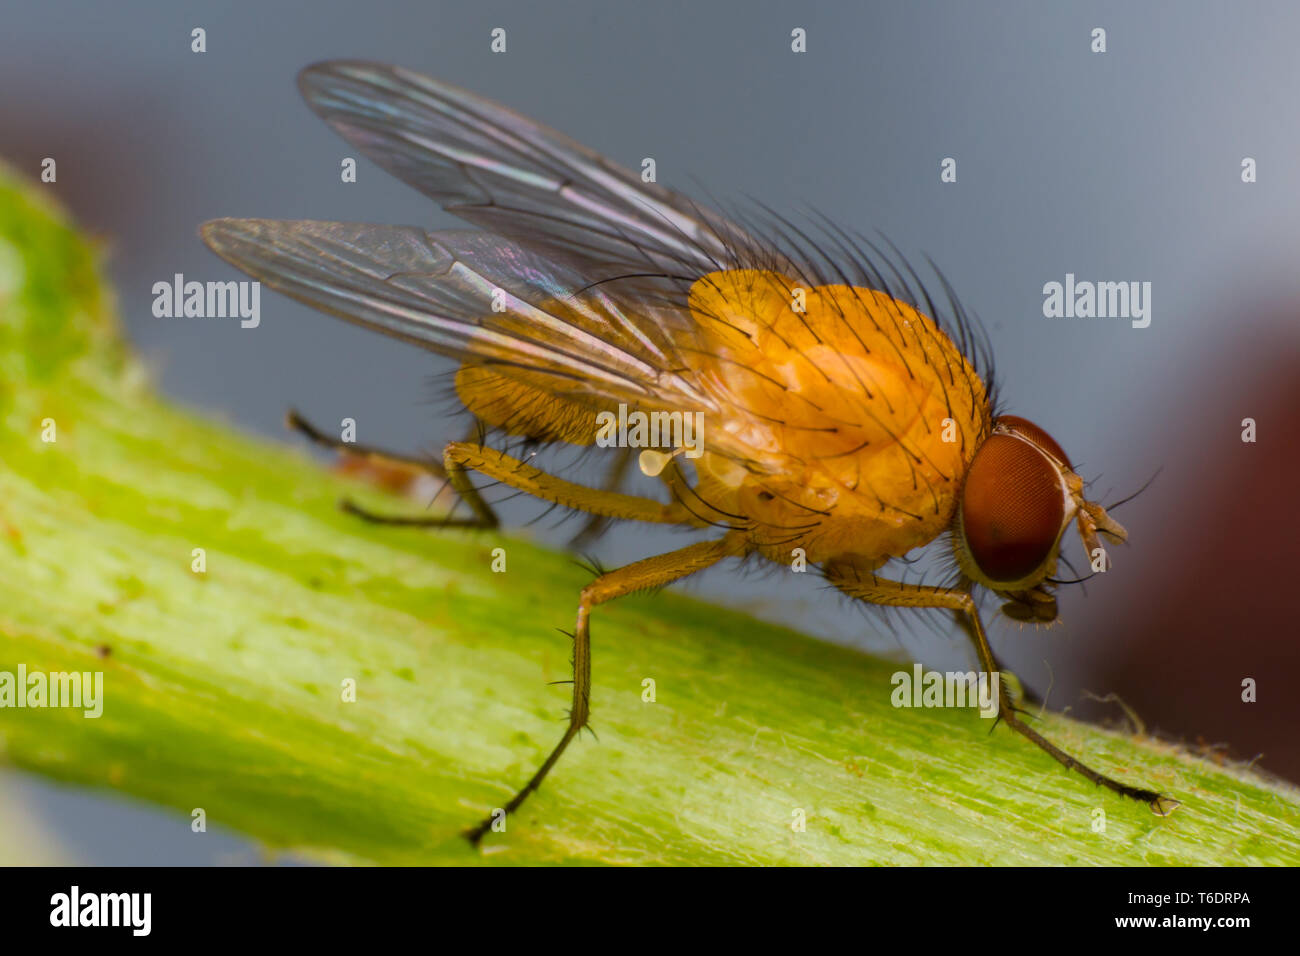 Gelb-orange Fliege mit Big orange Augen, auf grüne Oberfläche  Stockfotografie - Alamy